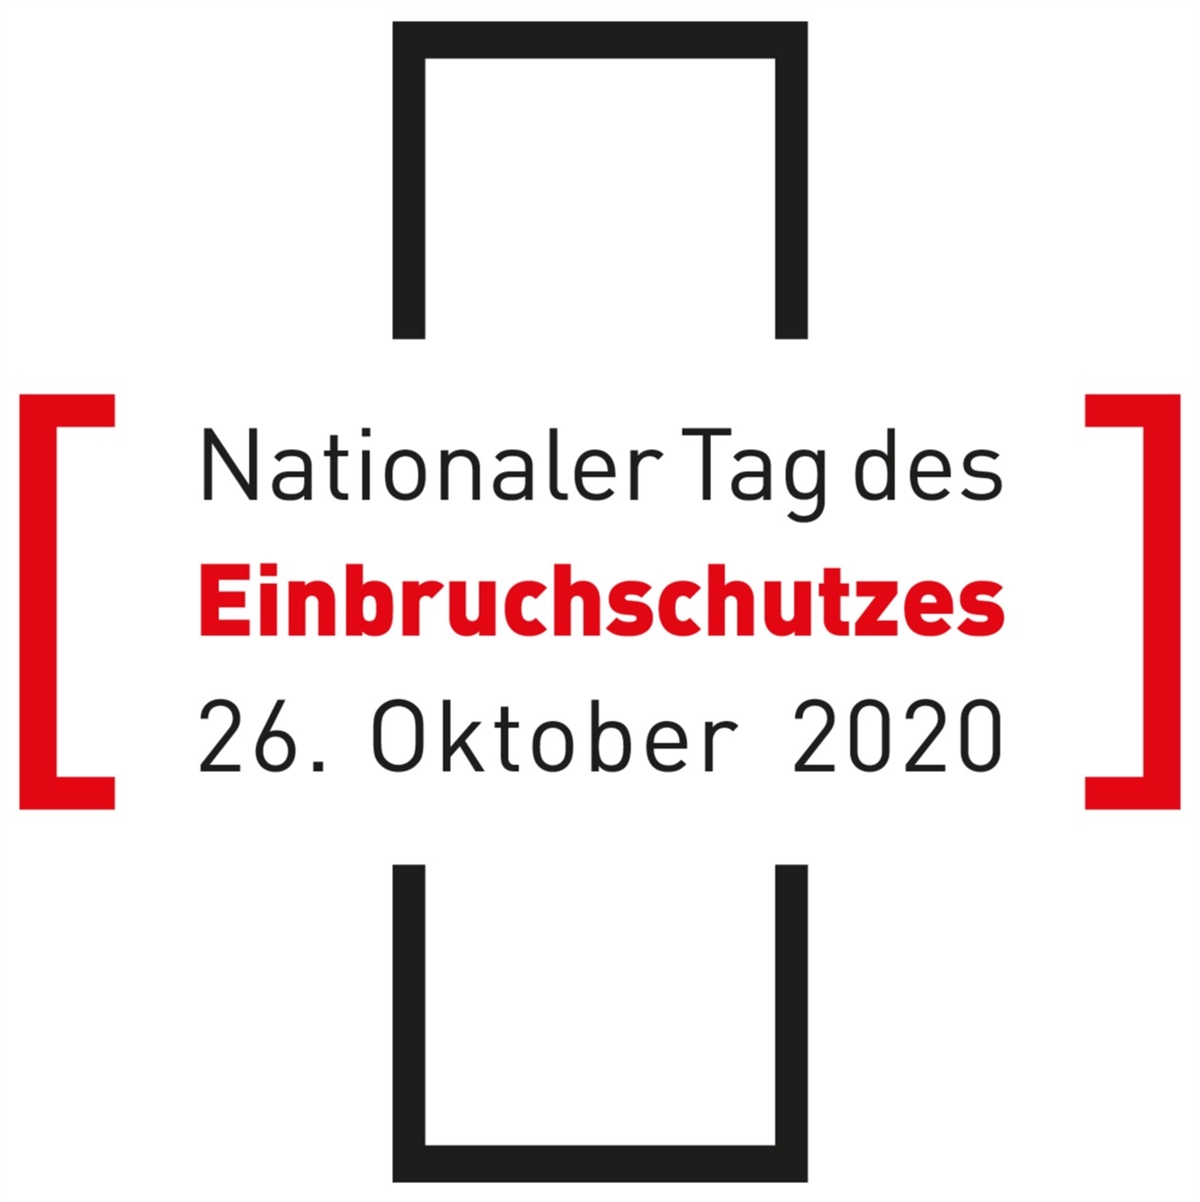 Schweizerkreuz mit dem Text: Nationaler Tag des Einbruchschutzes am 26. Oktober 2020